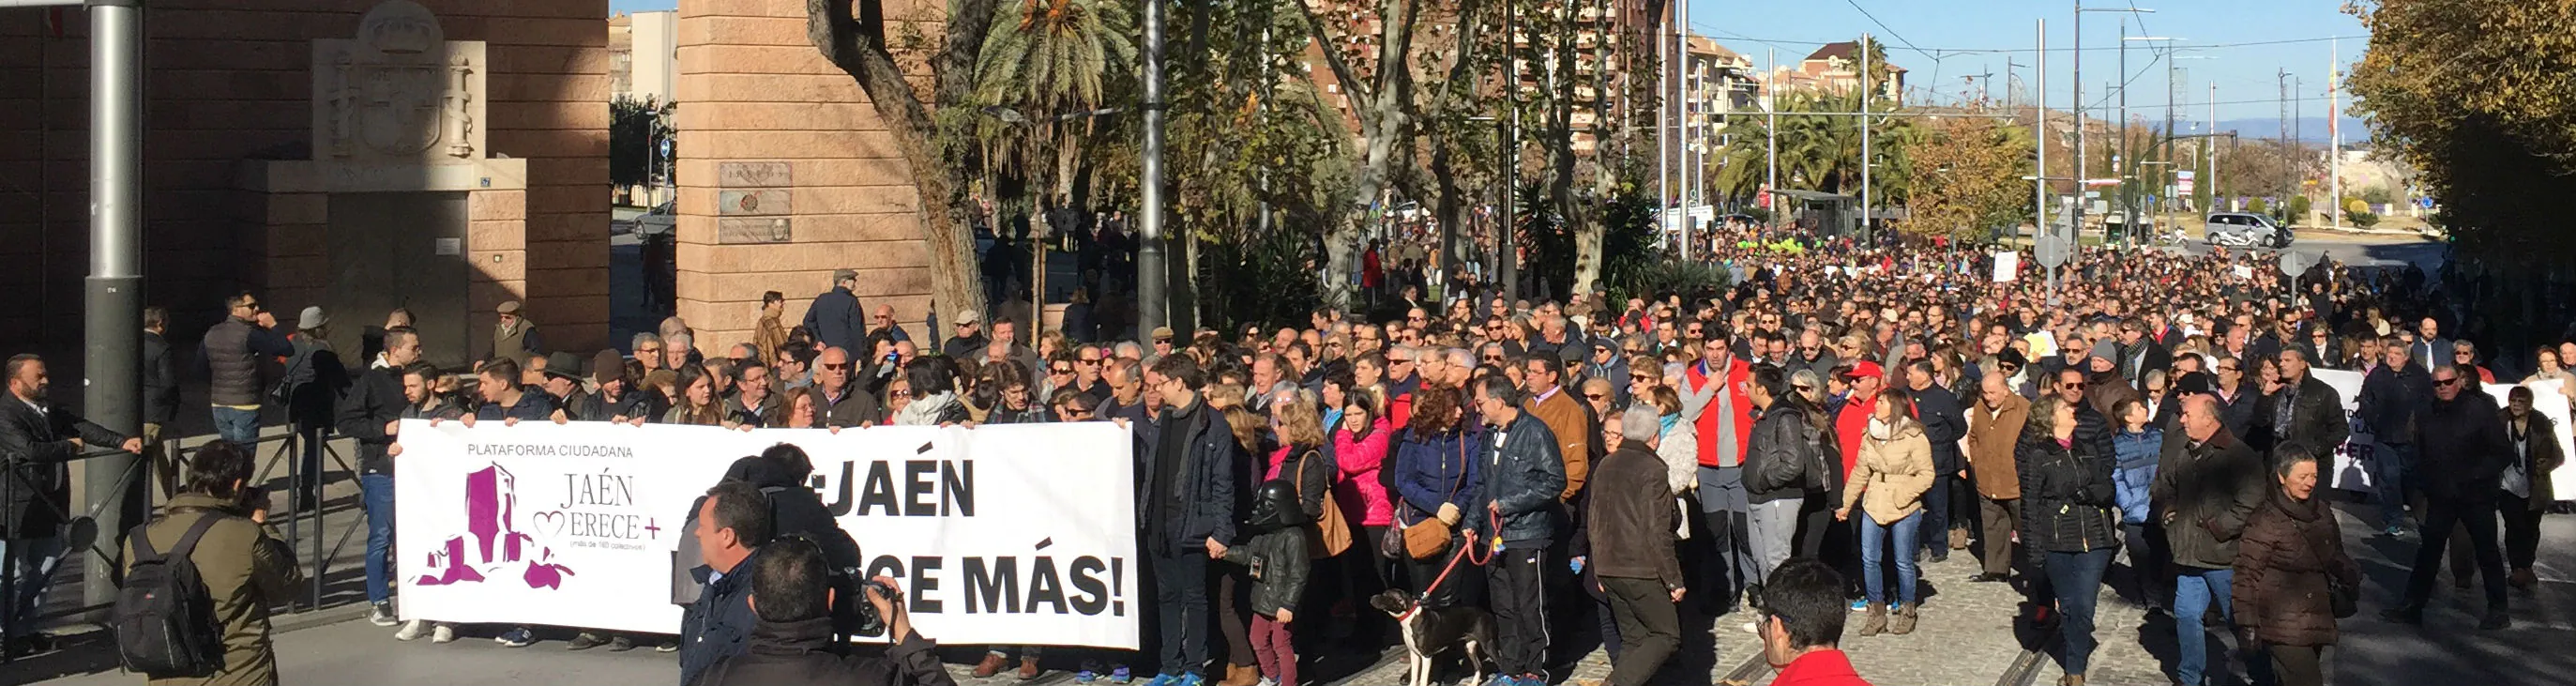 Manifestación del 17 de diciembre convocada por Jaén merece más